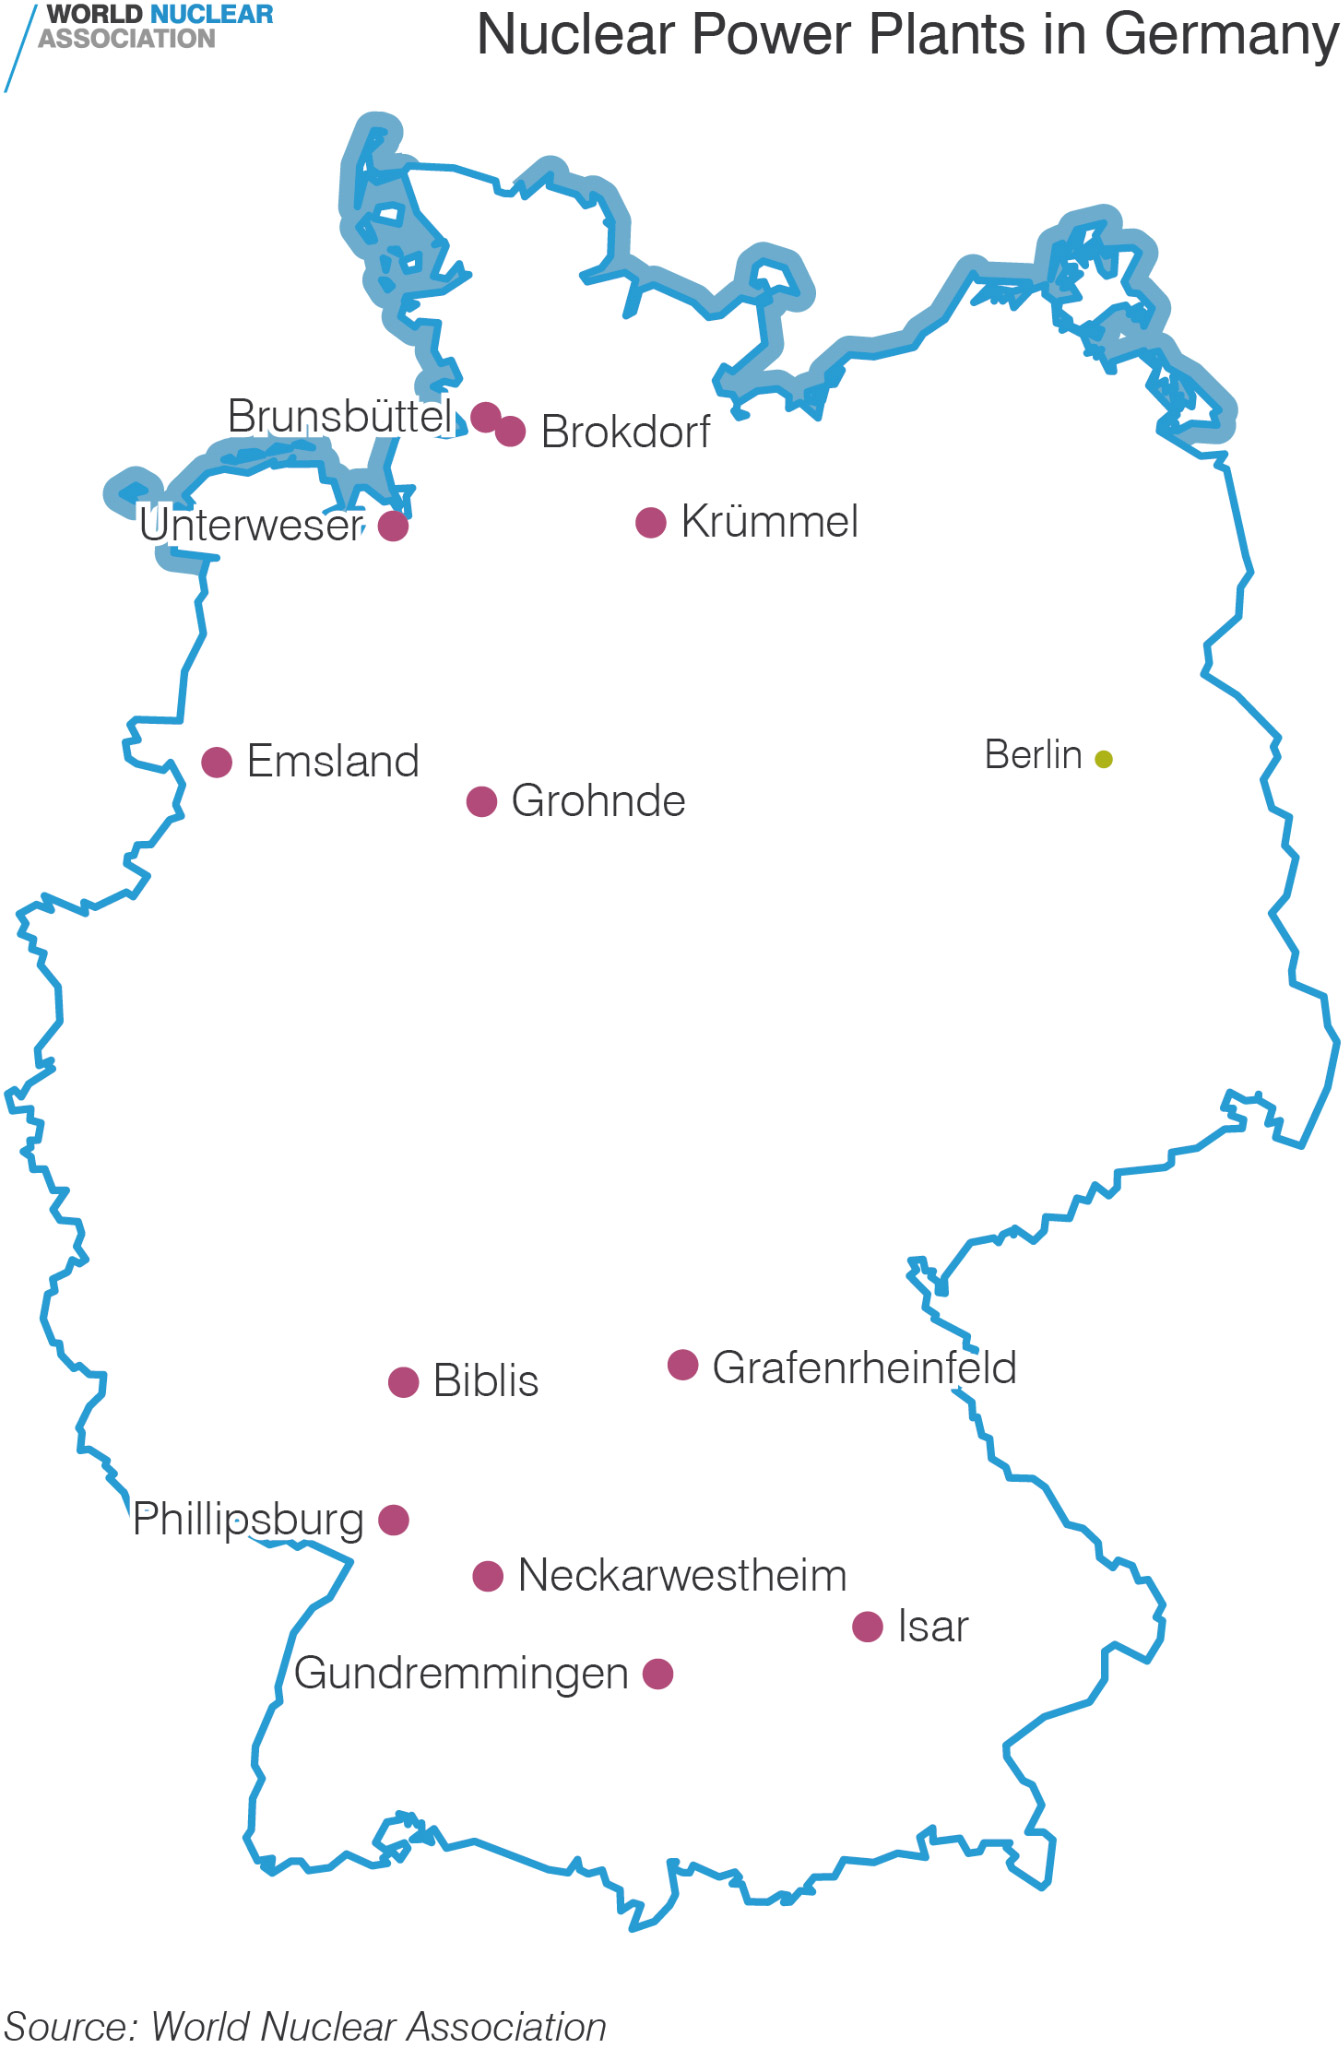 図右下	Isar（イーザル）原子力発電所 その北西	Neckarwestheim（ネッカーベストハイム）原子力発電所 北西の国境近く	Emsland（エムスランド）原子力発電